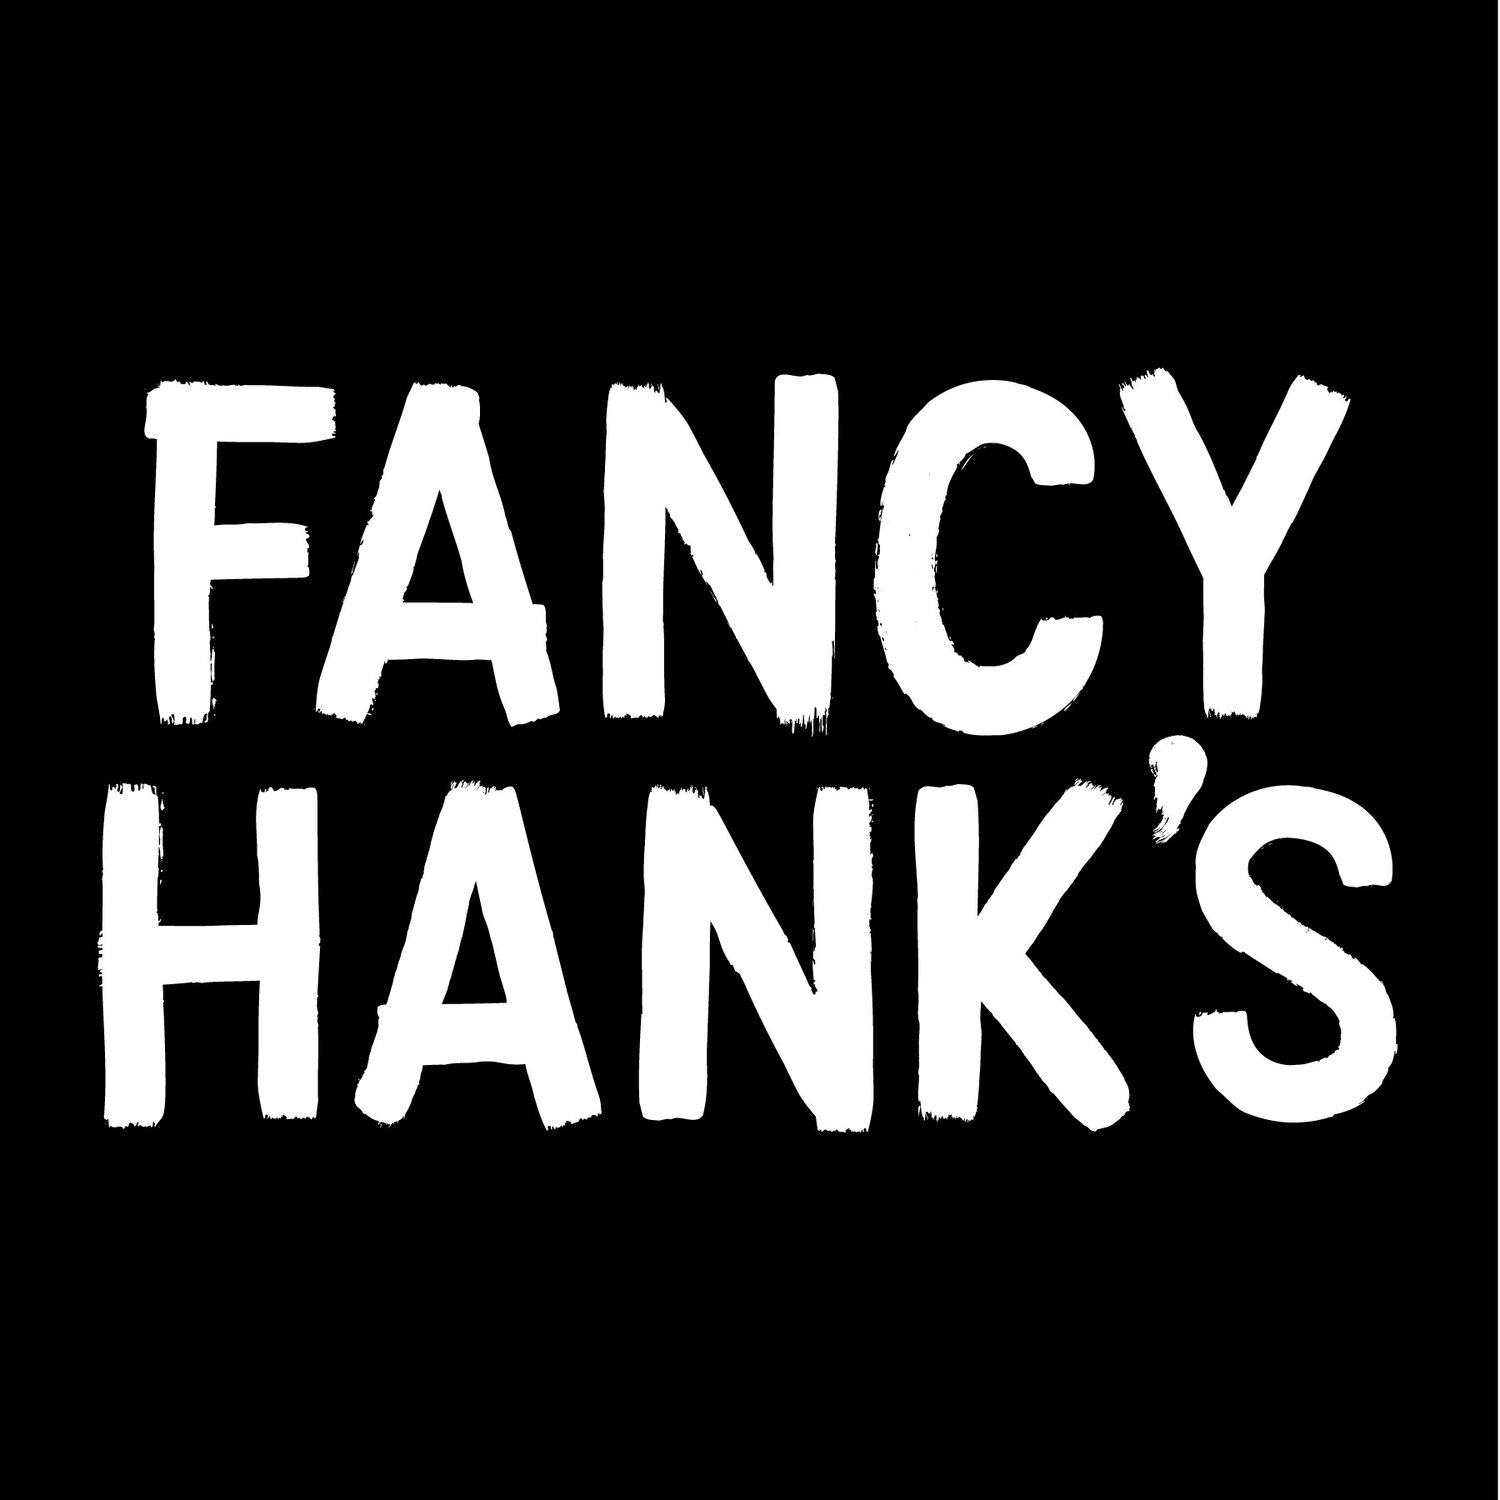 Fancy Hank's